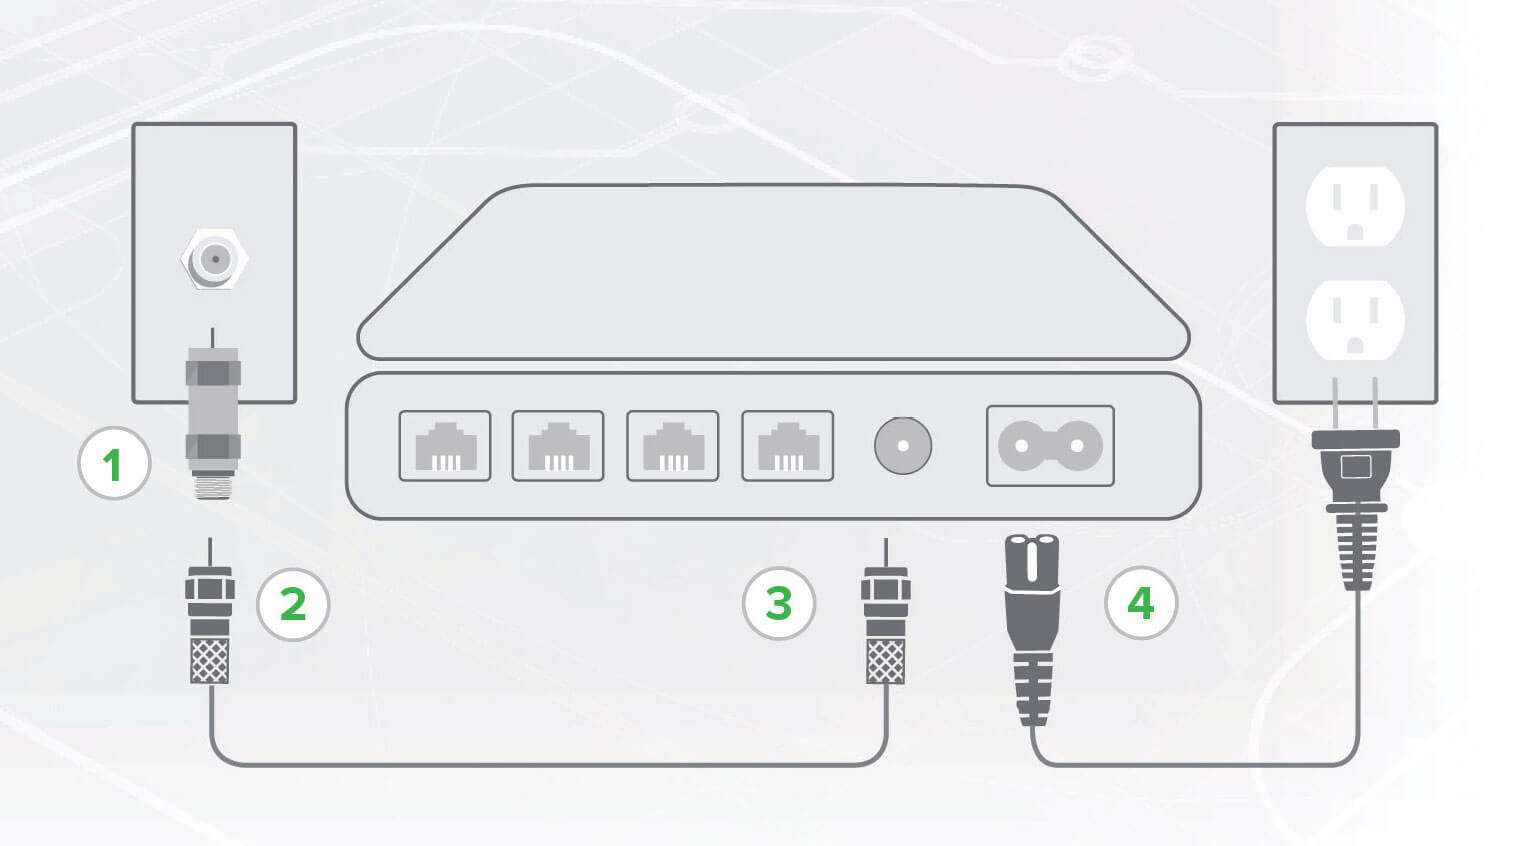 Astound modem connection diagram